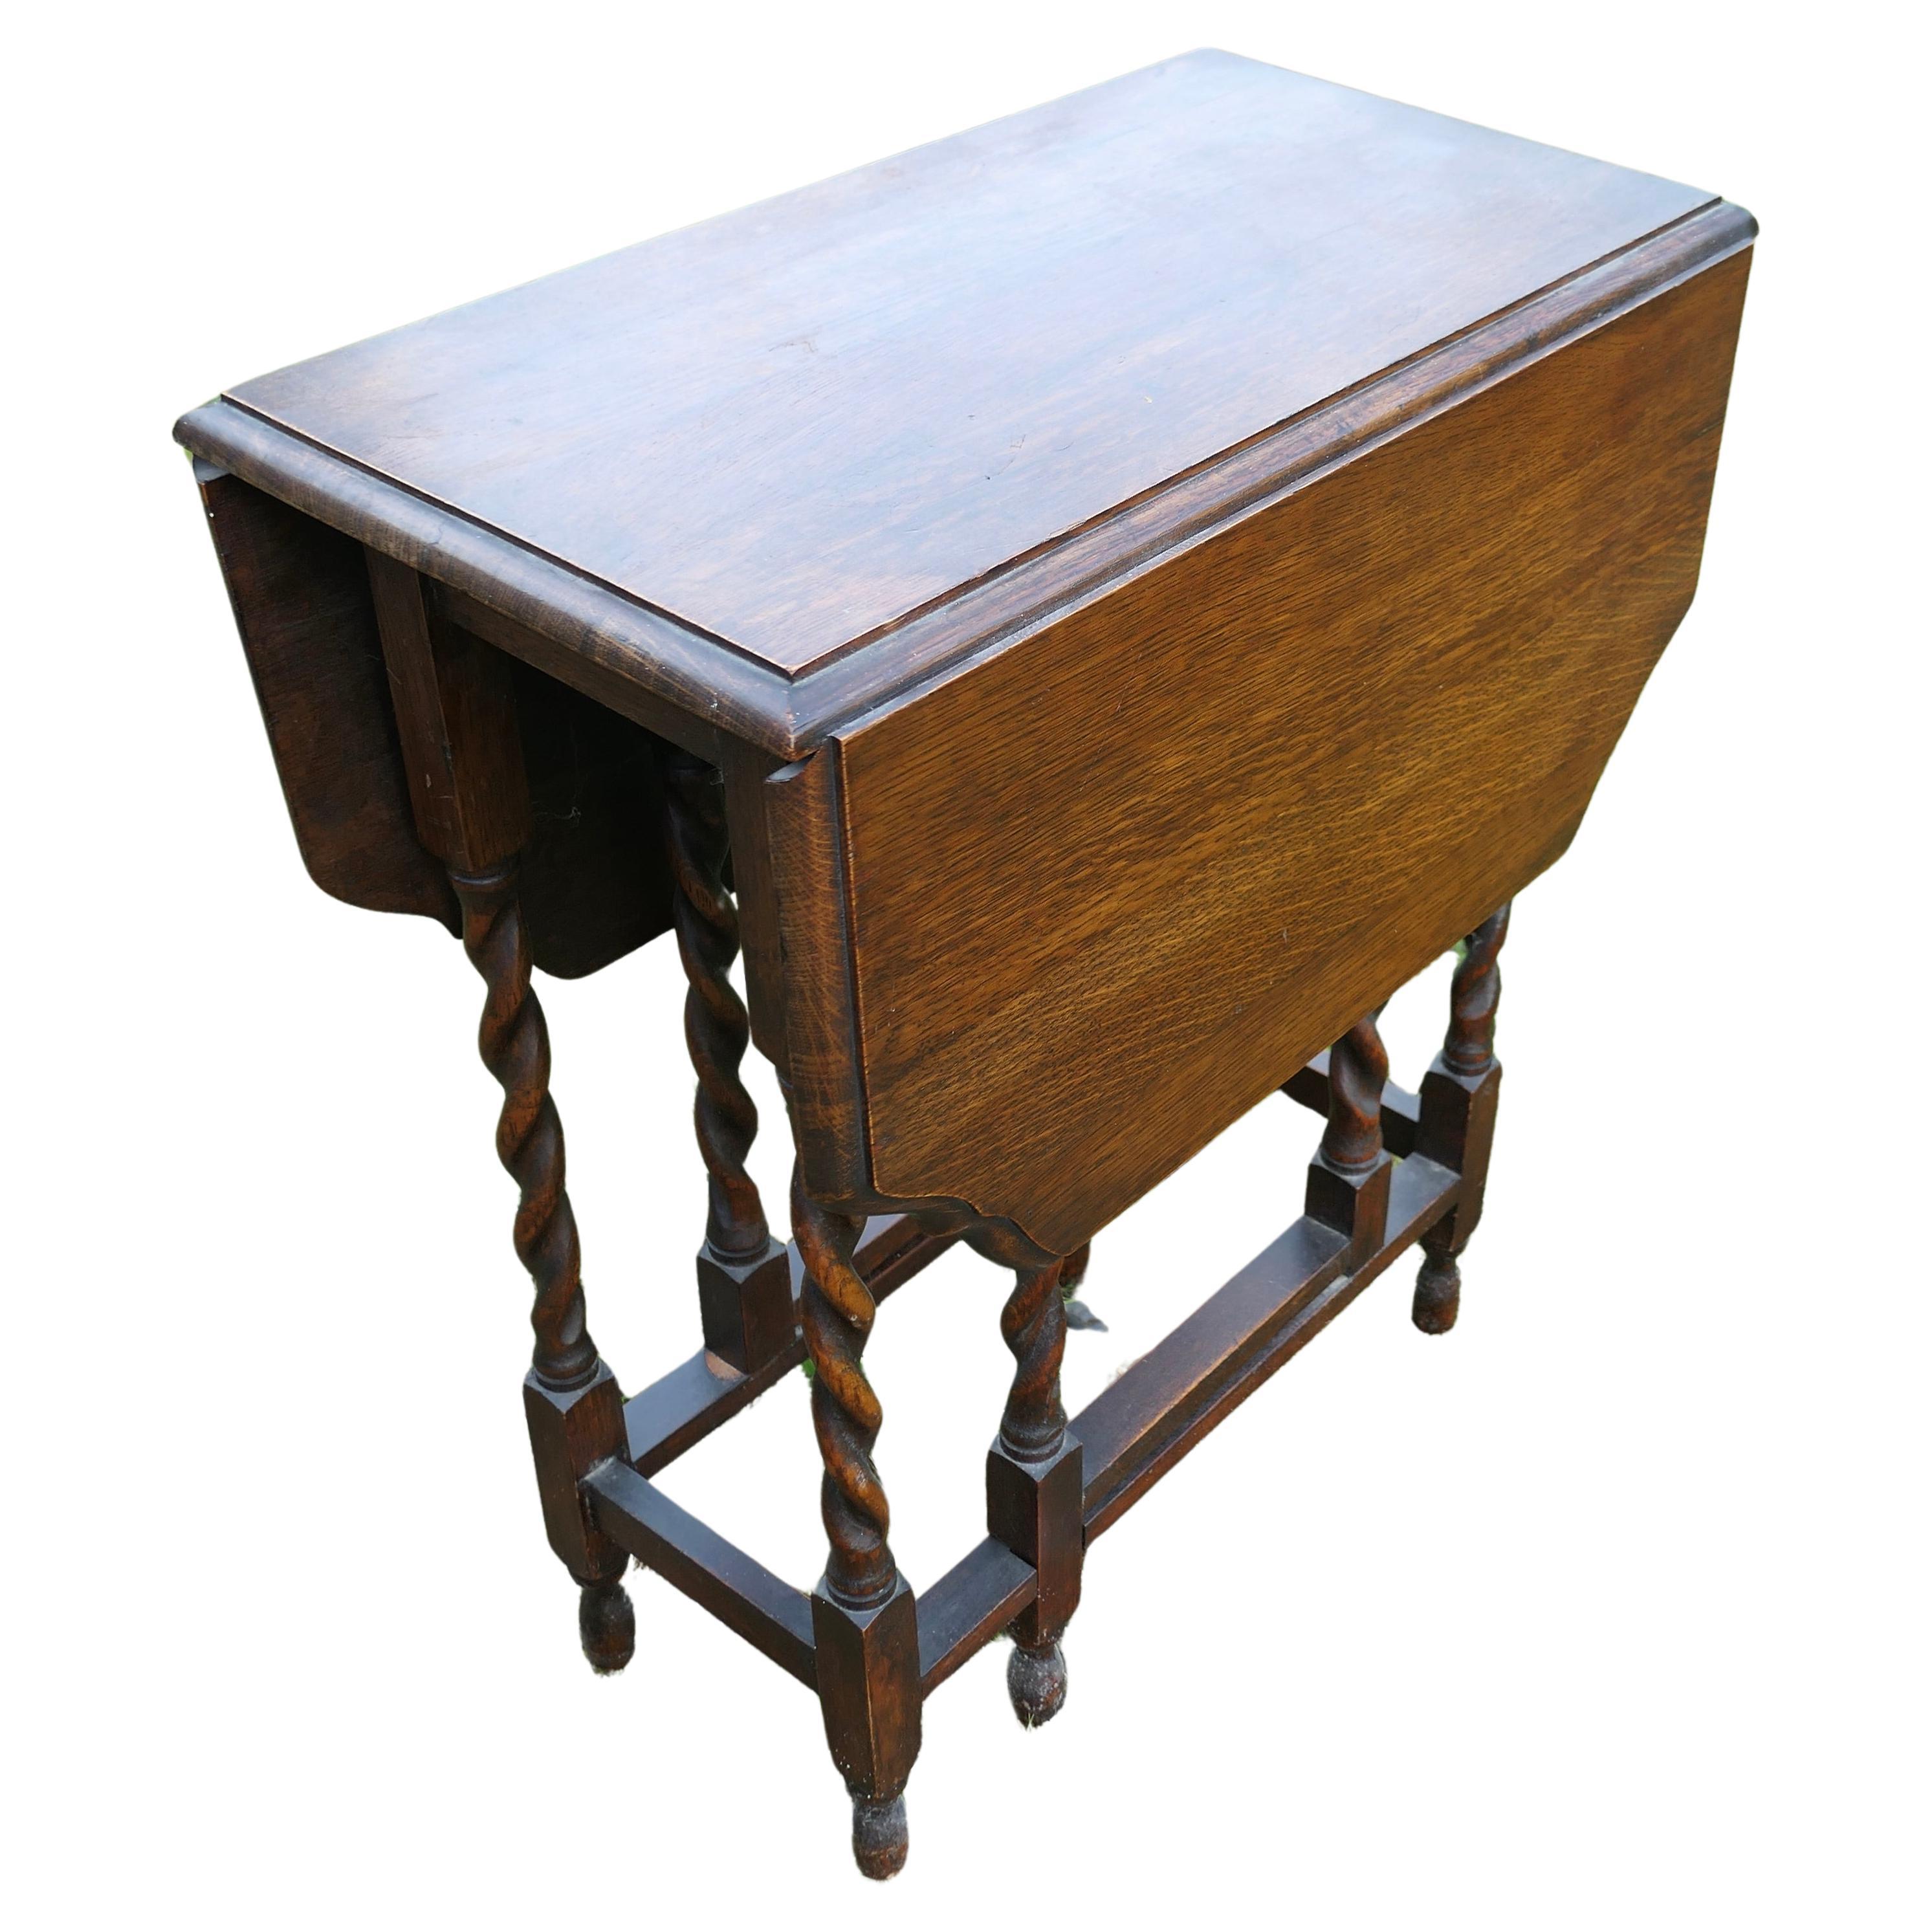 Une bonne table à pieds en chêne massif de l'époque victorienne   La table est fabriquée en Oak Oak massif.  